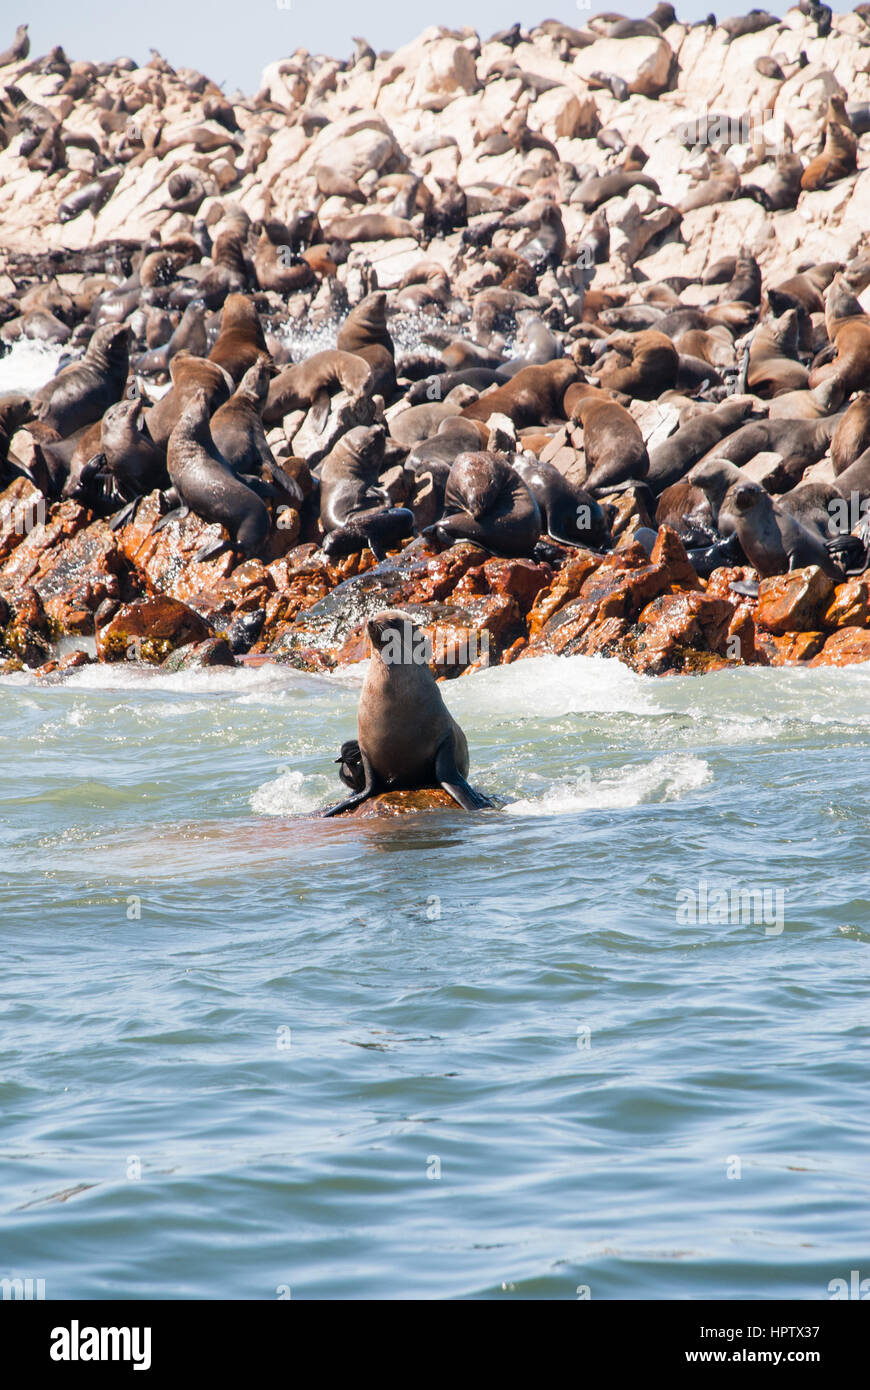 Colonie de phoques à fourrure du Cap en Afrique du Sud Mossel Bay Banque D'Images